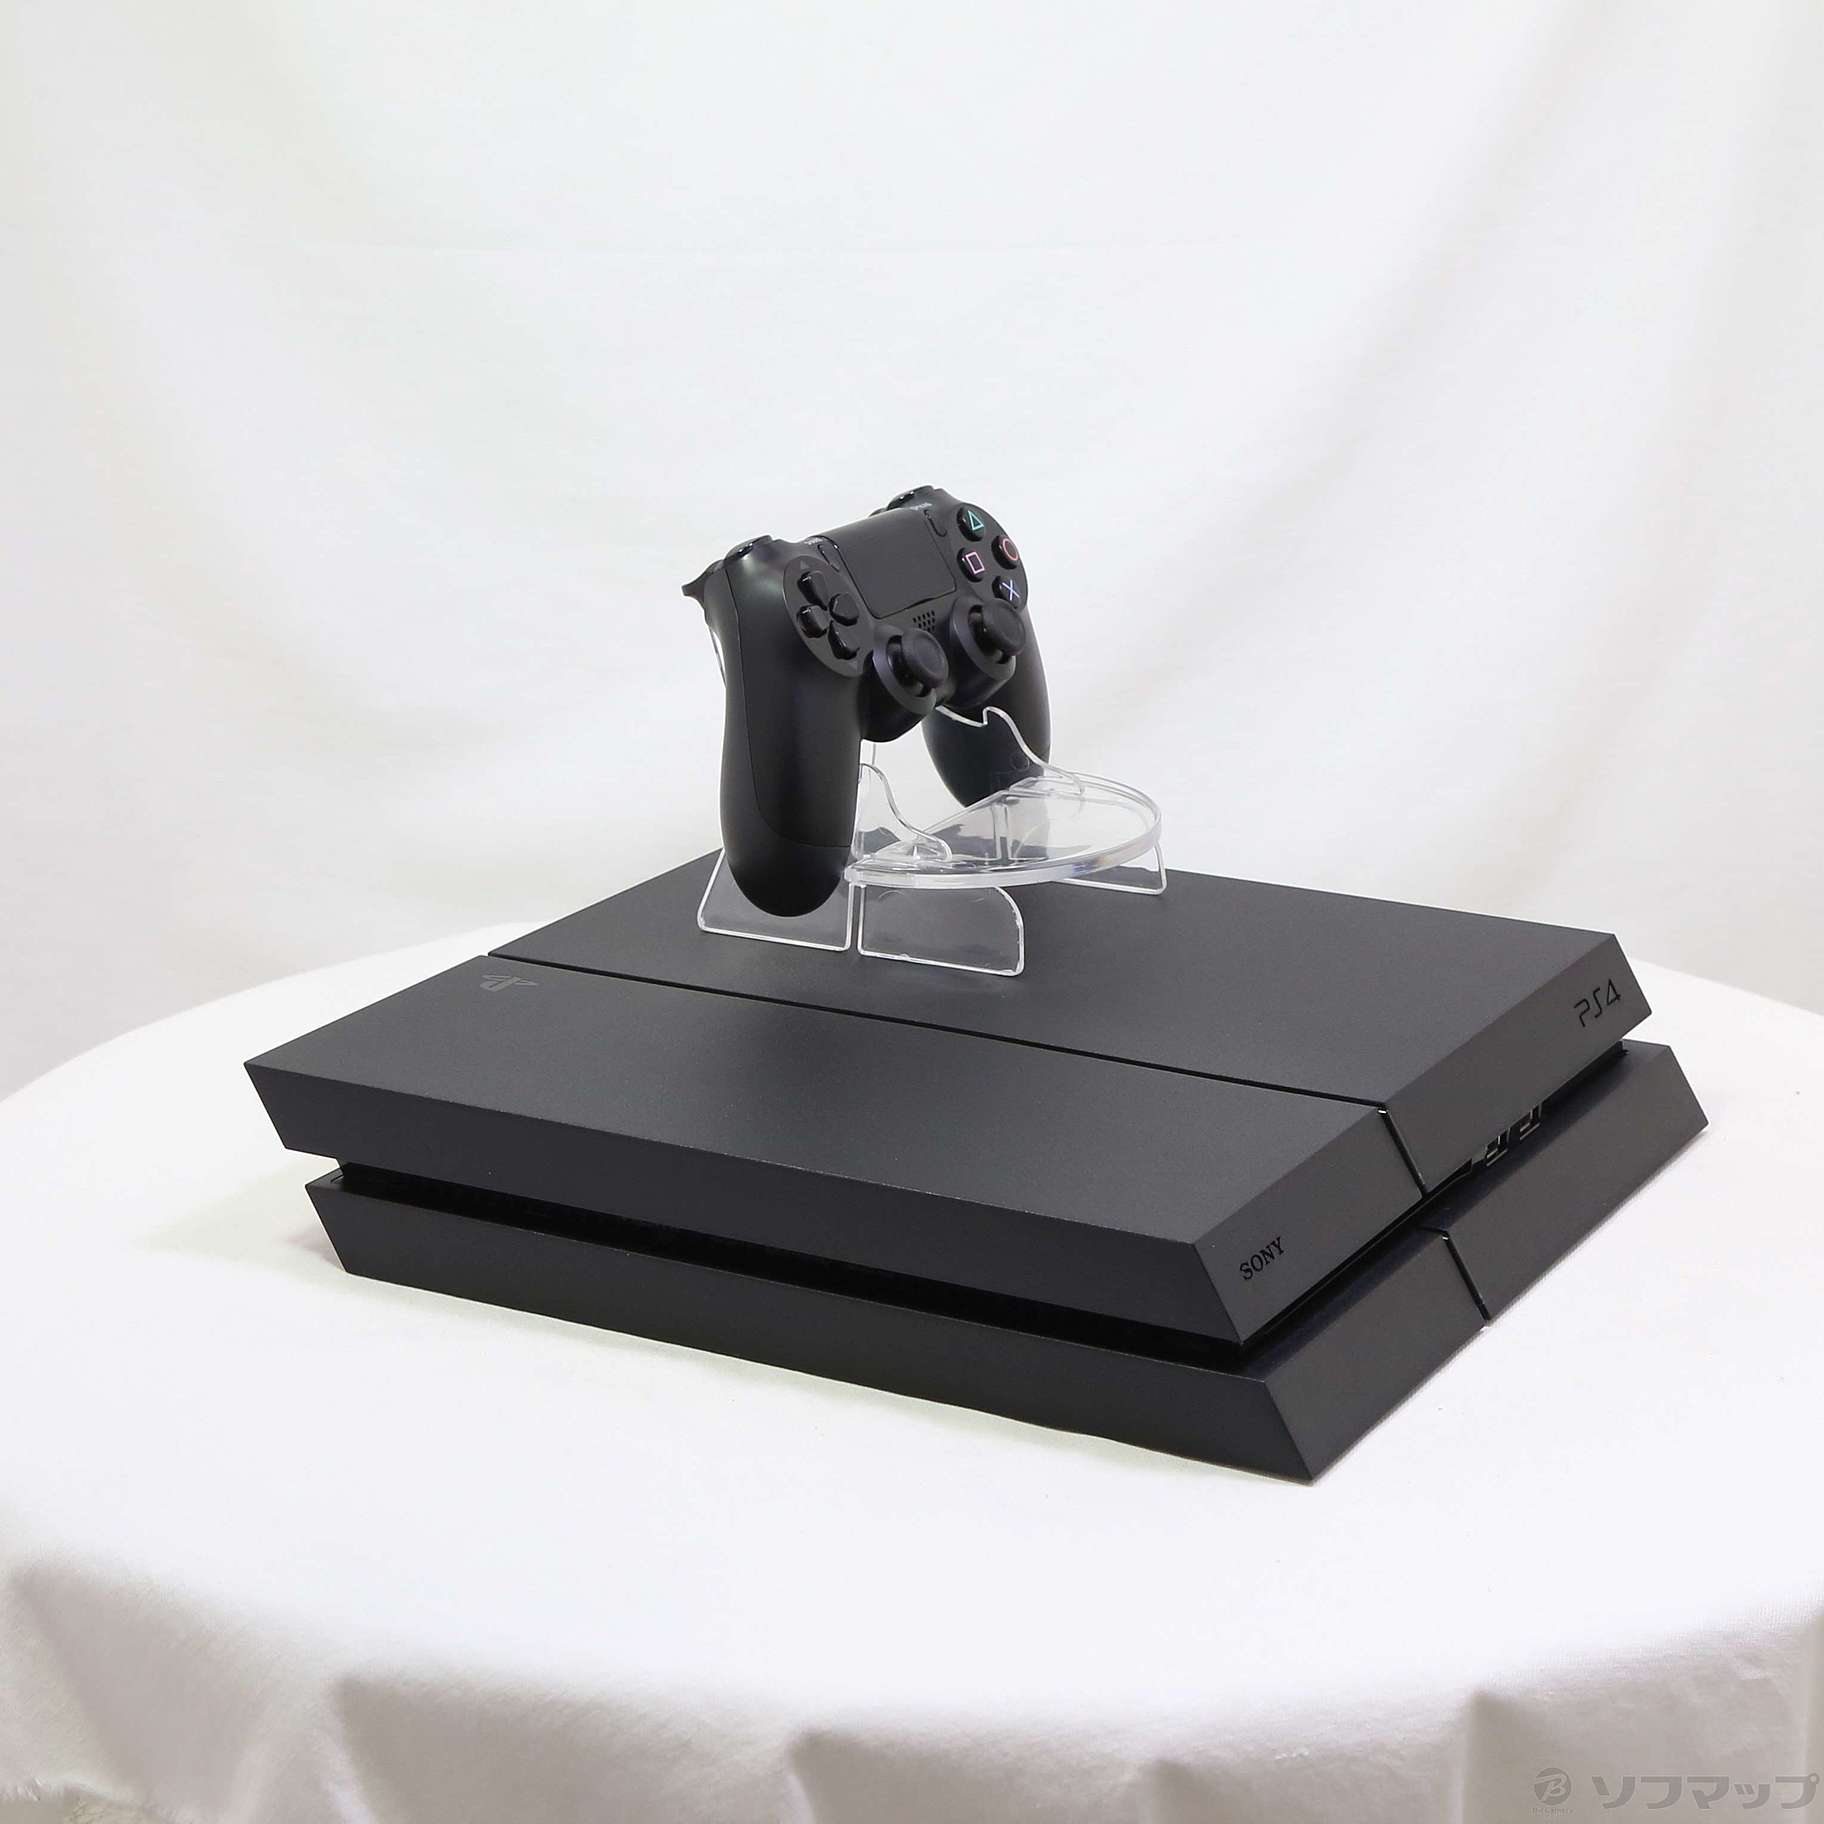 PlayStation®4 ジェット・ブラック 500GB CUH-1200AB